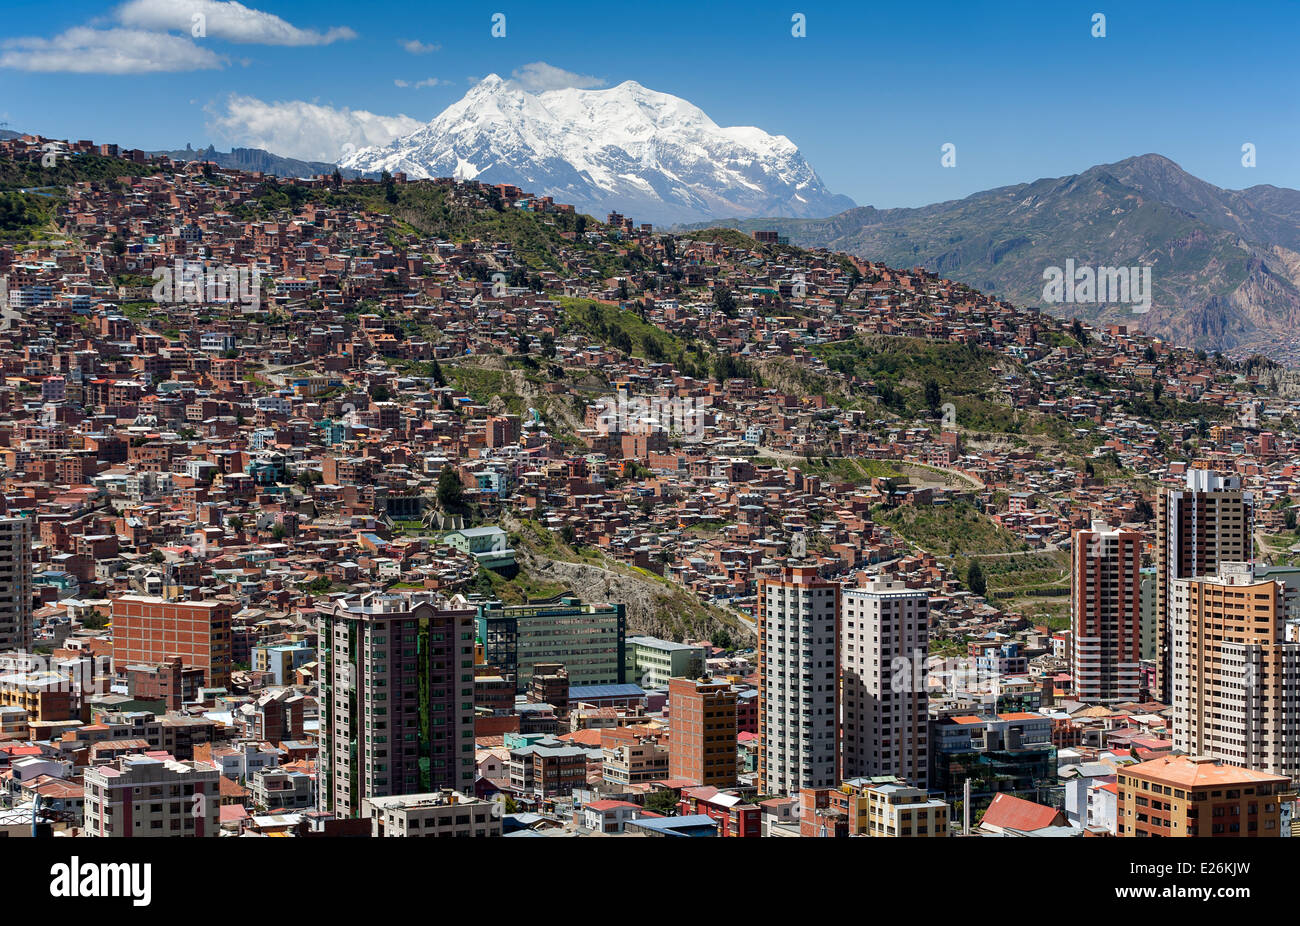 La Paz und Mount Illimani (6462mts). Blick vom Aussichtspunkt Kili Kili. Bolivien Stockfoto